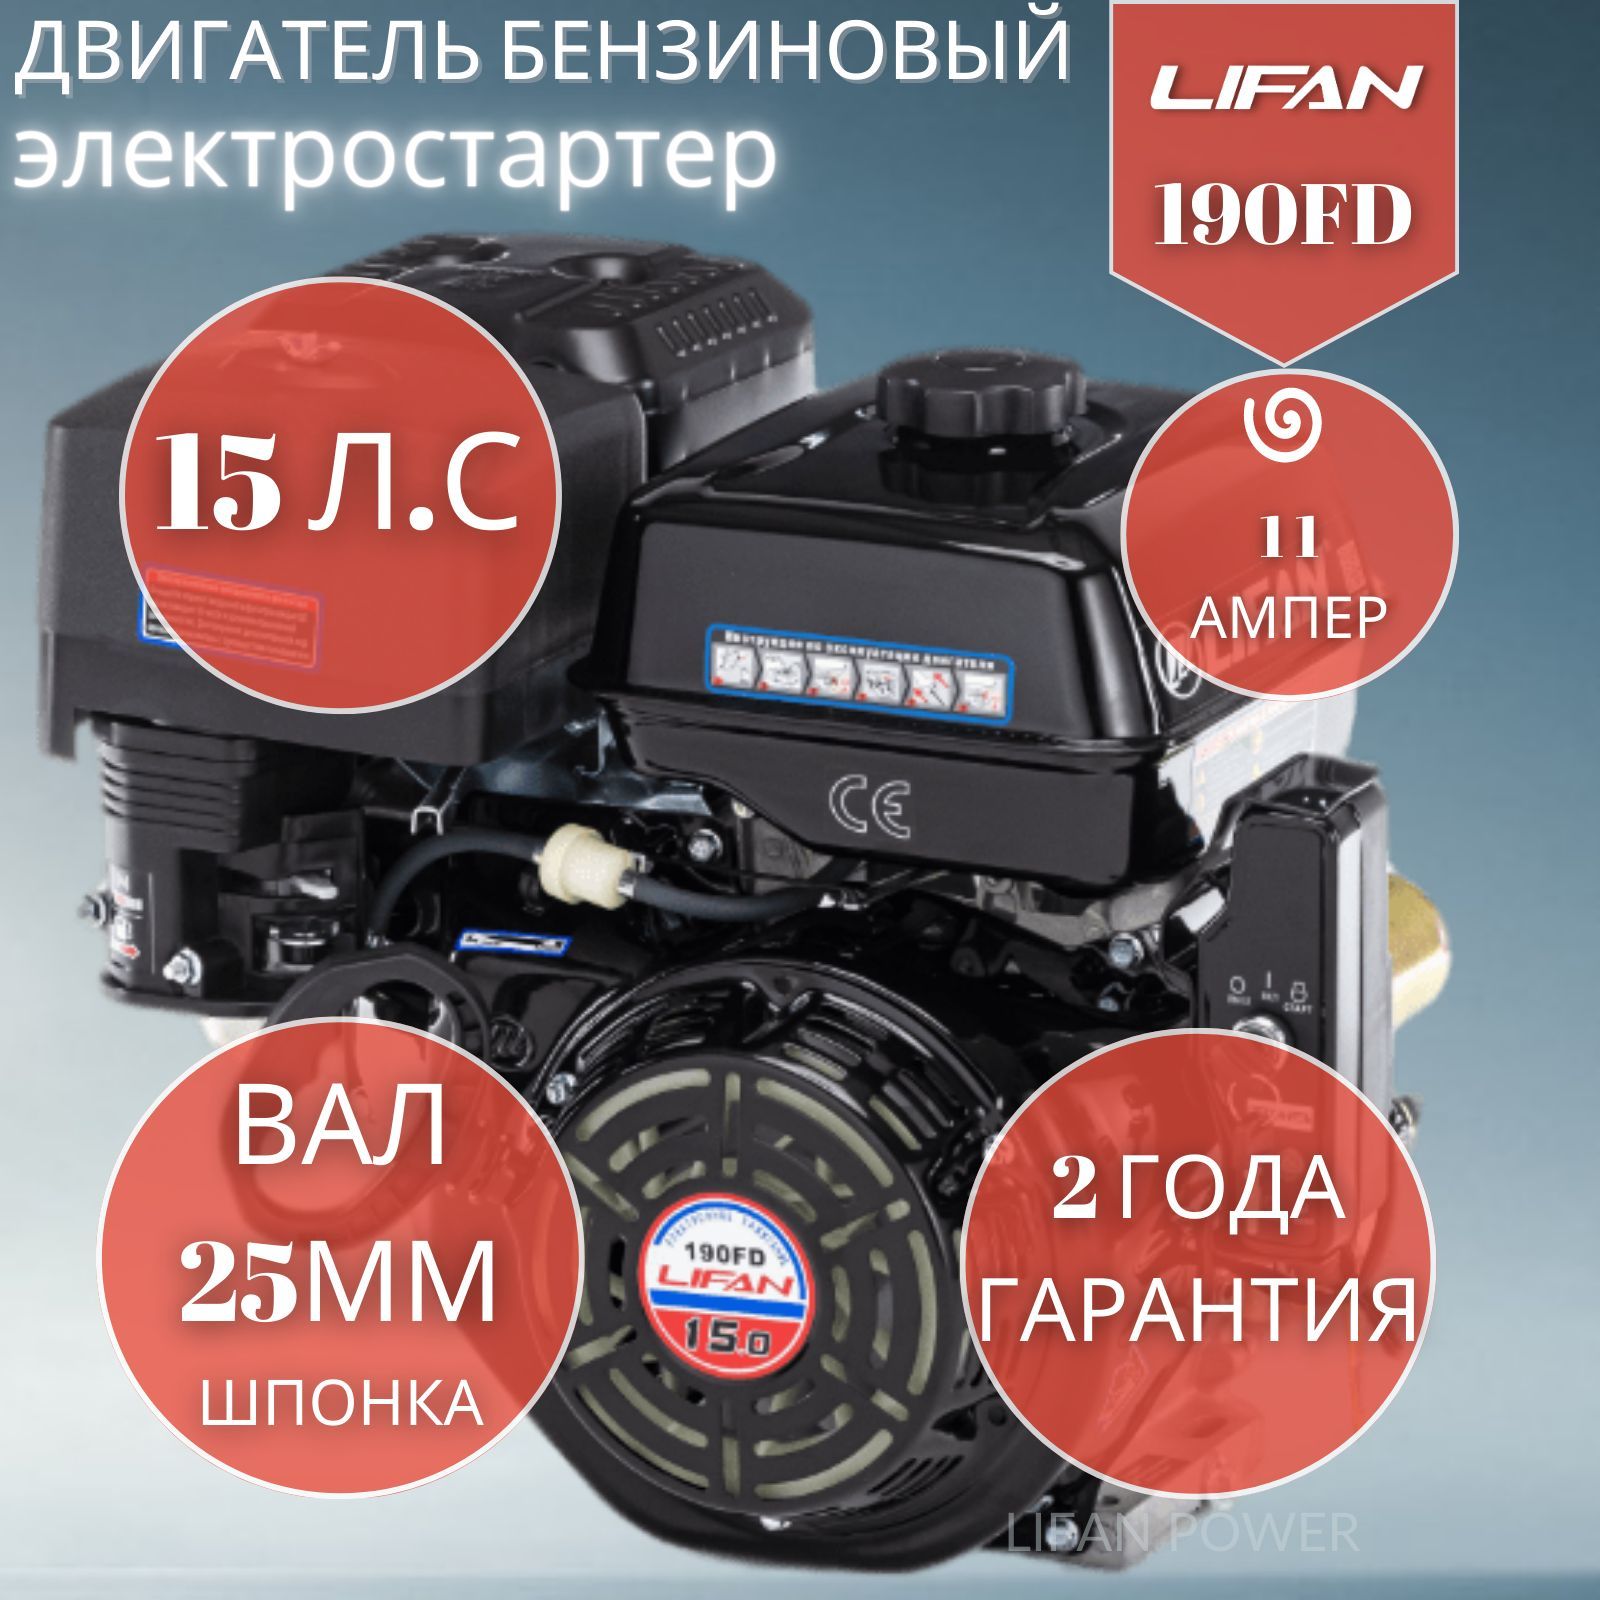 ДвигательбензиновыйLifan190FDcкатушкой11Аэлектростартер15л.с.,вал25мм